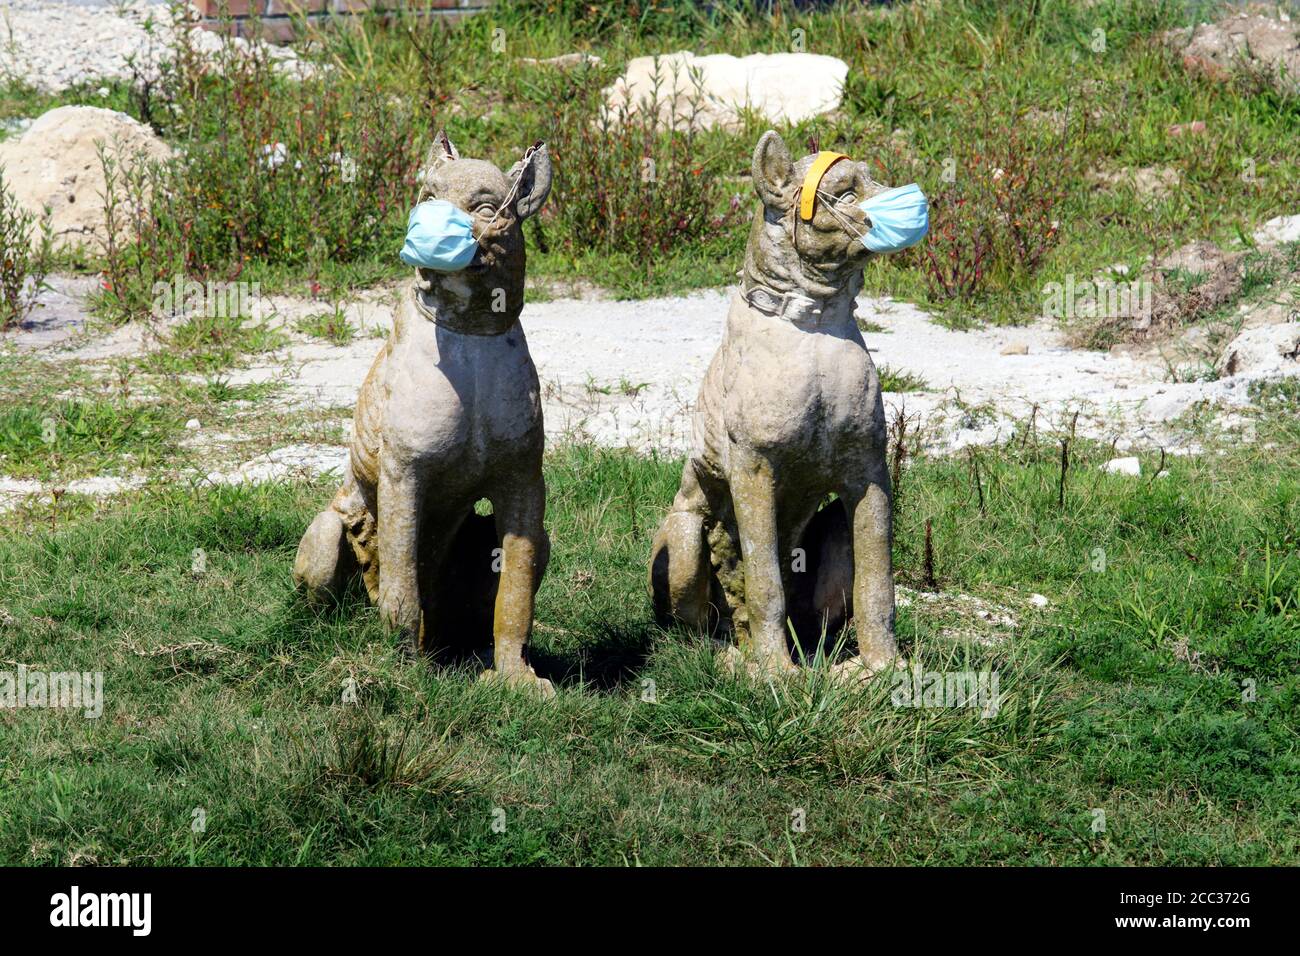 Zwei Steinhunde, die als Rasendekorationen verwendet werden, sind während der Corona Virus Pandemie humorvoll mit Gesichtsmasken gekleidet. Cape May, New Jersey, USA Stockfoto